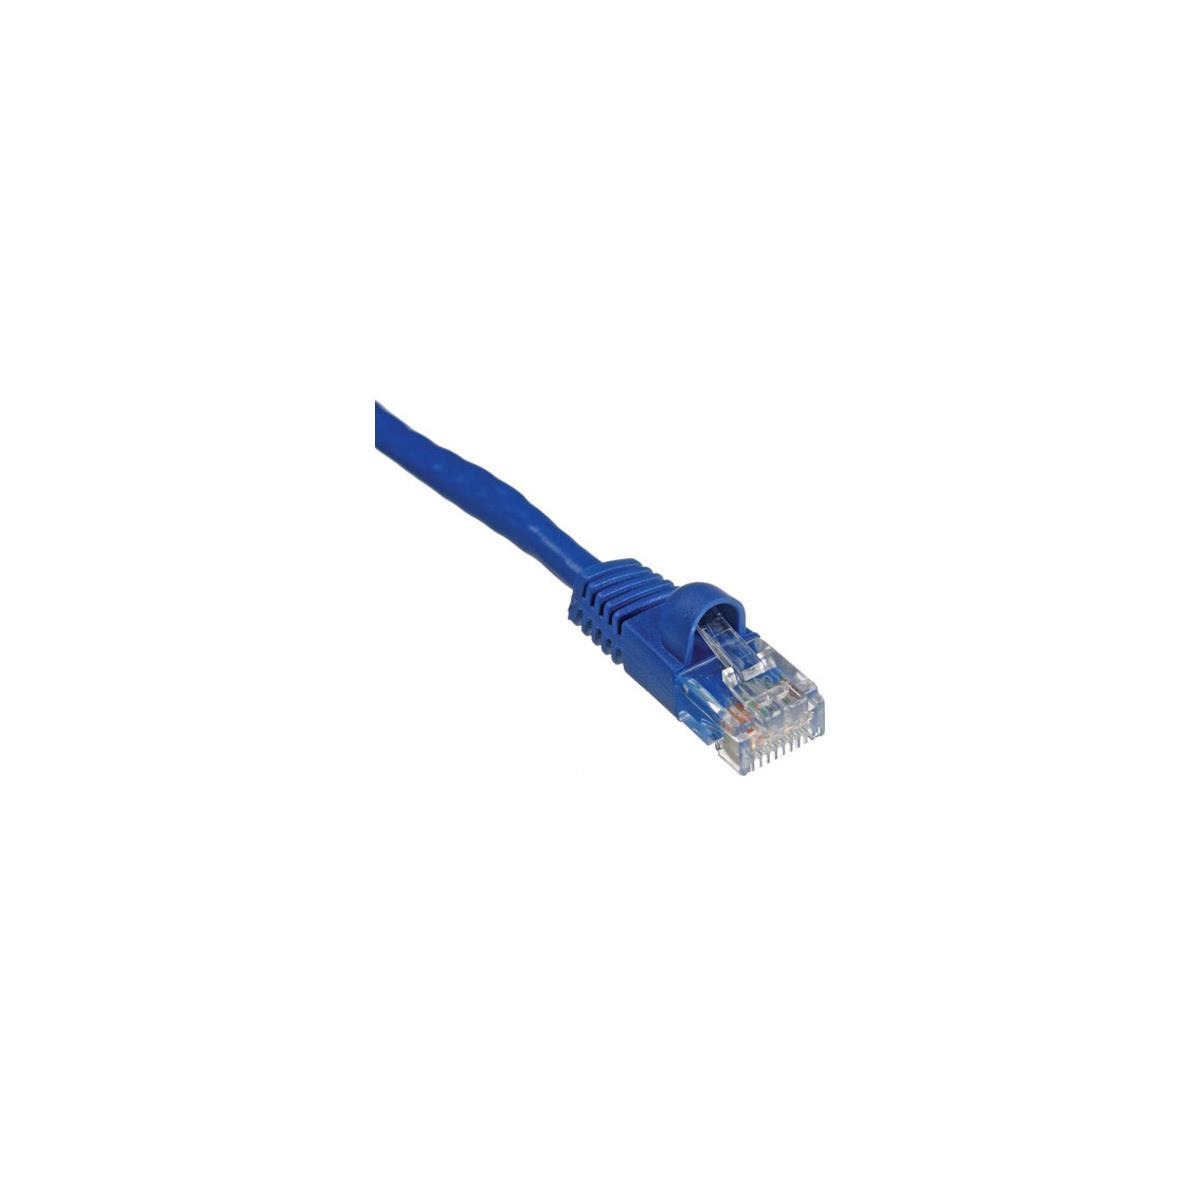 Комплексный соединительный кабель Cat6 550 МГц длиной 7 футов без зацепов, синий #CAT6-7BLU